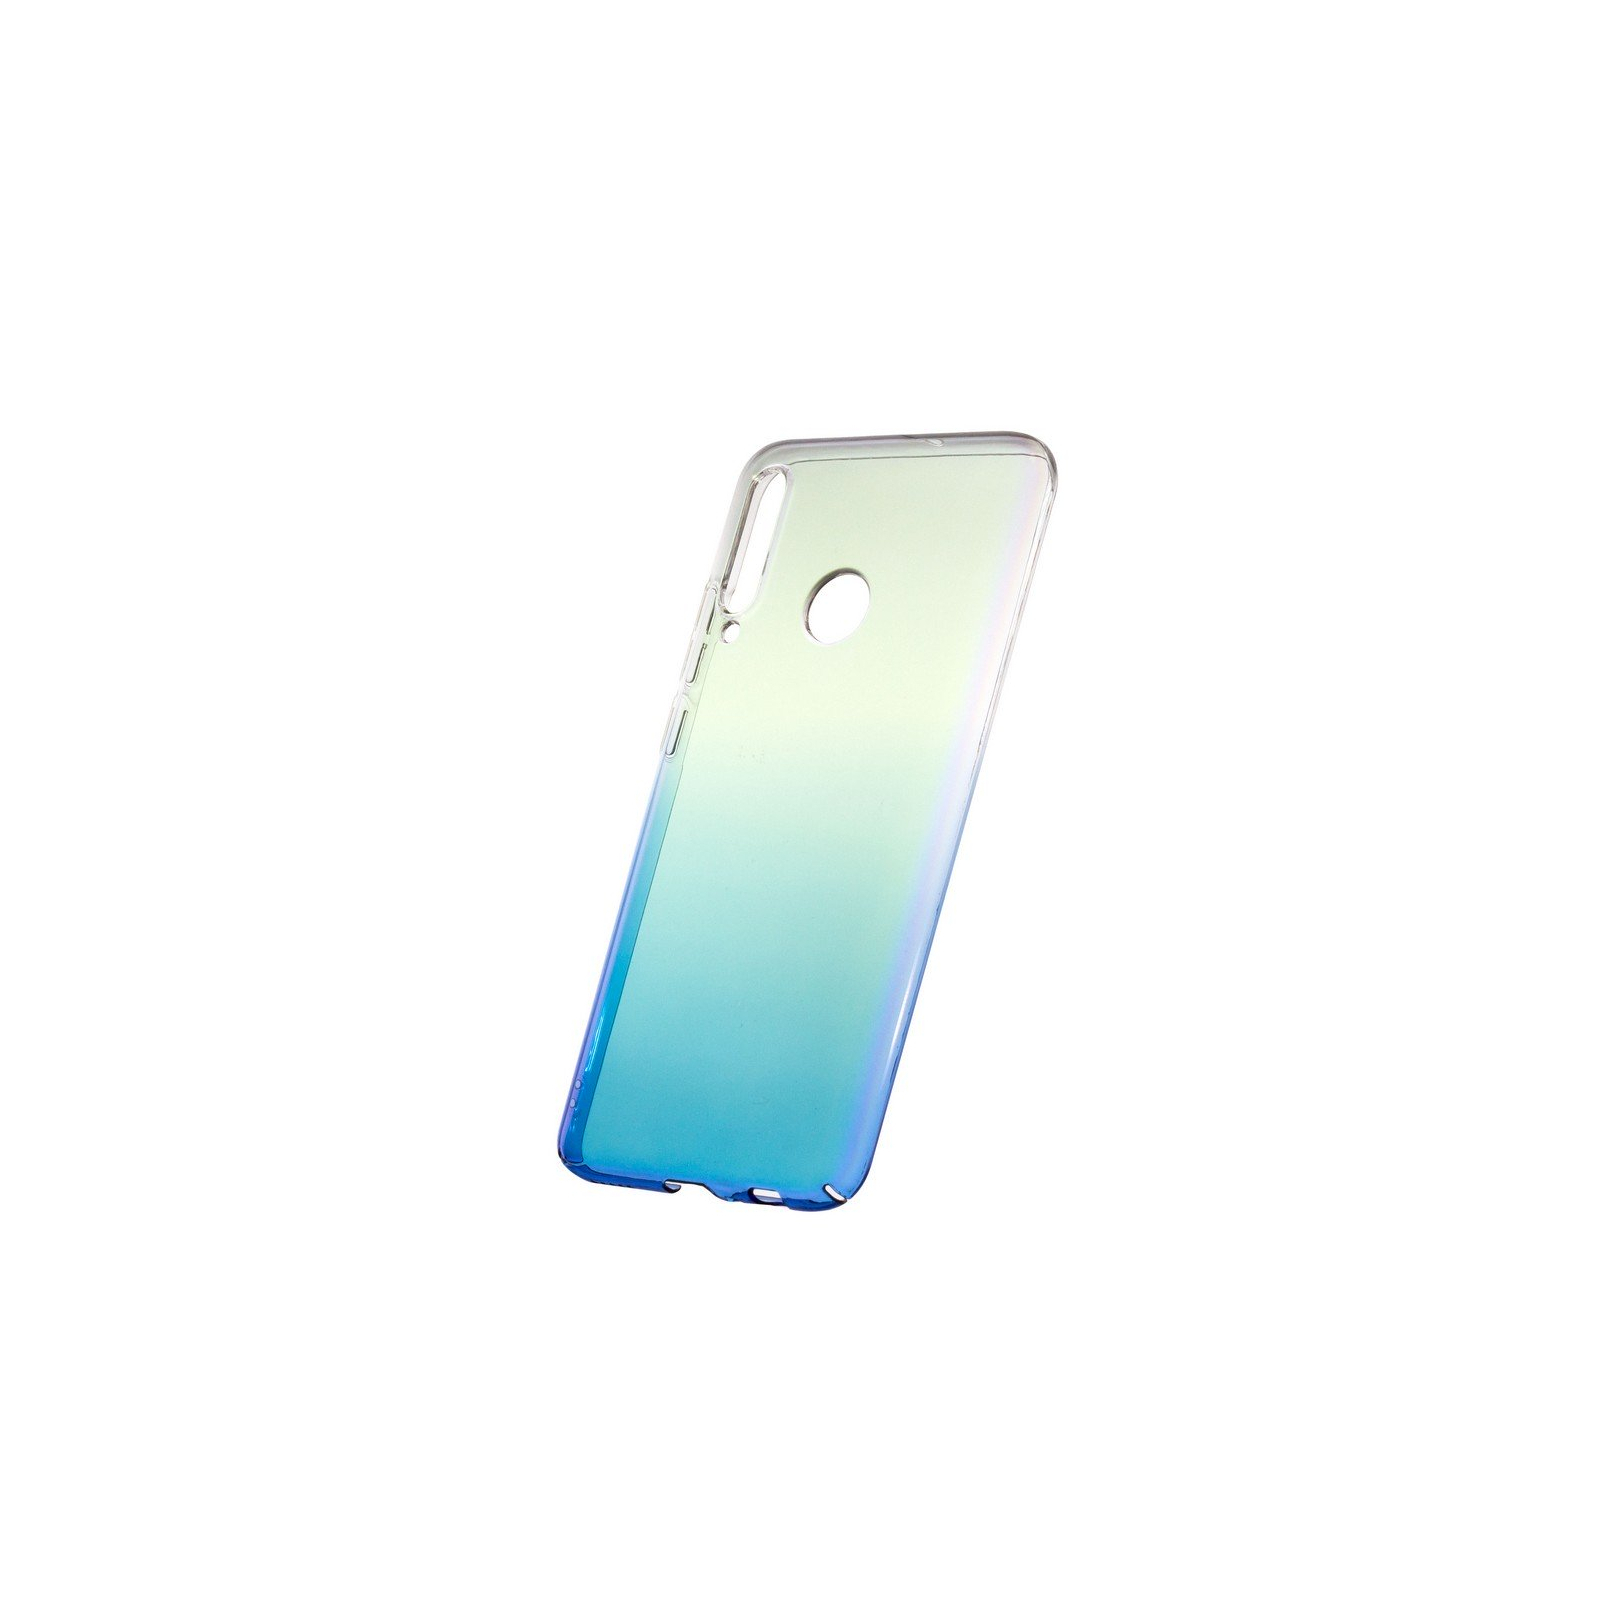 Чехол для мобильного телефона ColorWay ColorWay PC Gradient для Huawei P Smart 2019/P Smart plus 20 (CW-CPGHPSP19-BU) изображение 2